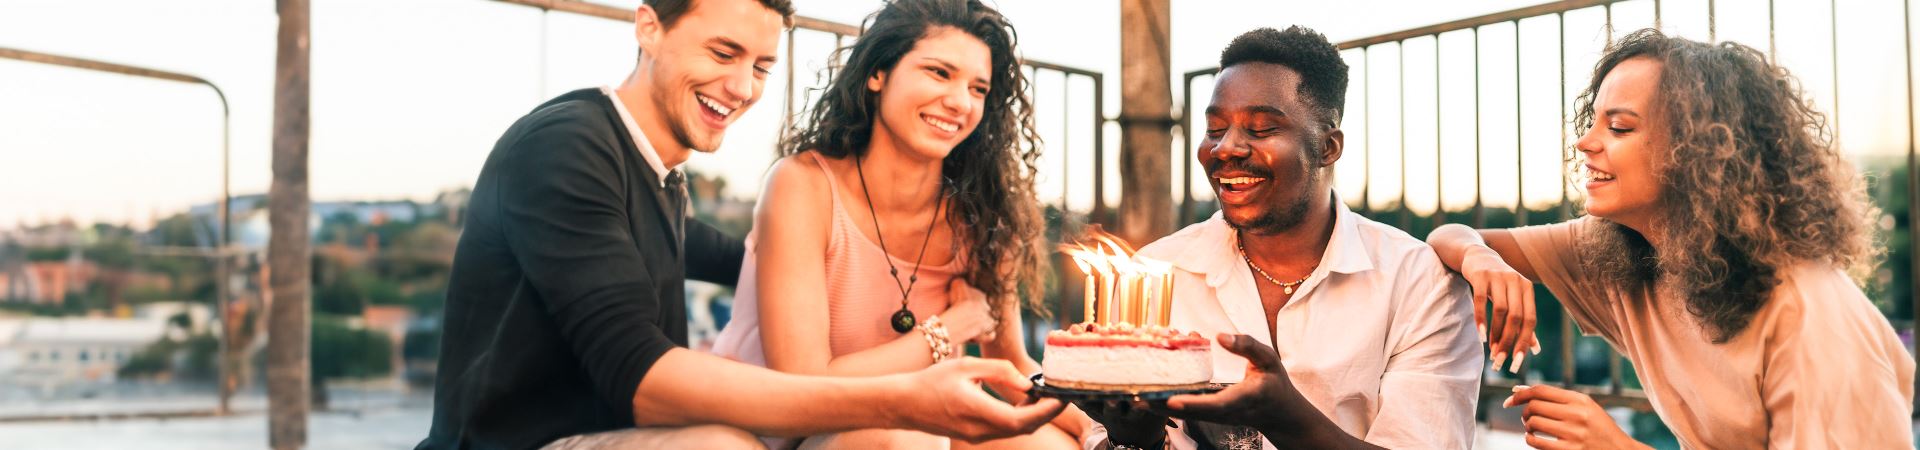 Esta fotografía muestra a cuatro personas (dos chicas y dos chicos) sonriendo y sentadas al aire libre. Los dos chicos sostienen una tarta de cumpleaños con varias velas encendidas.